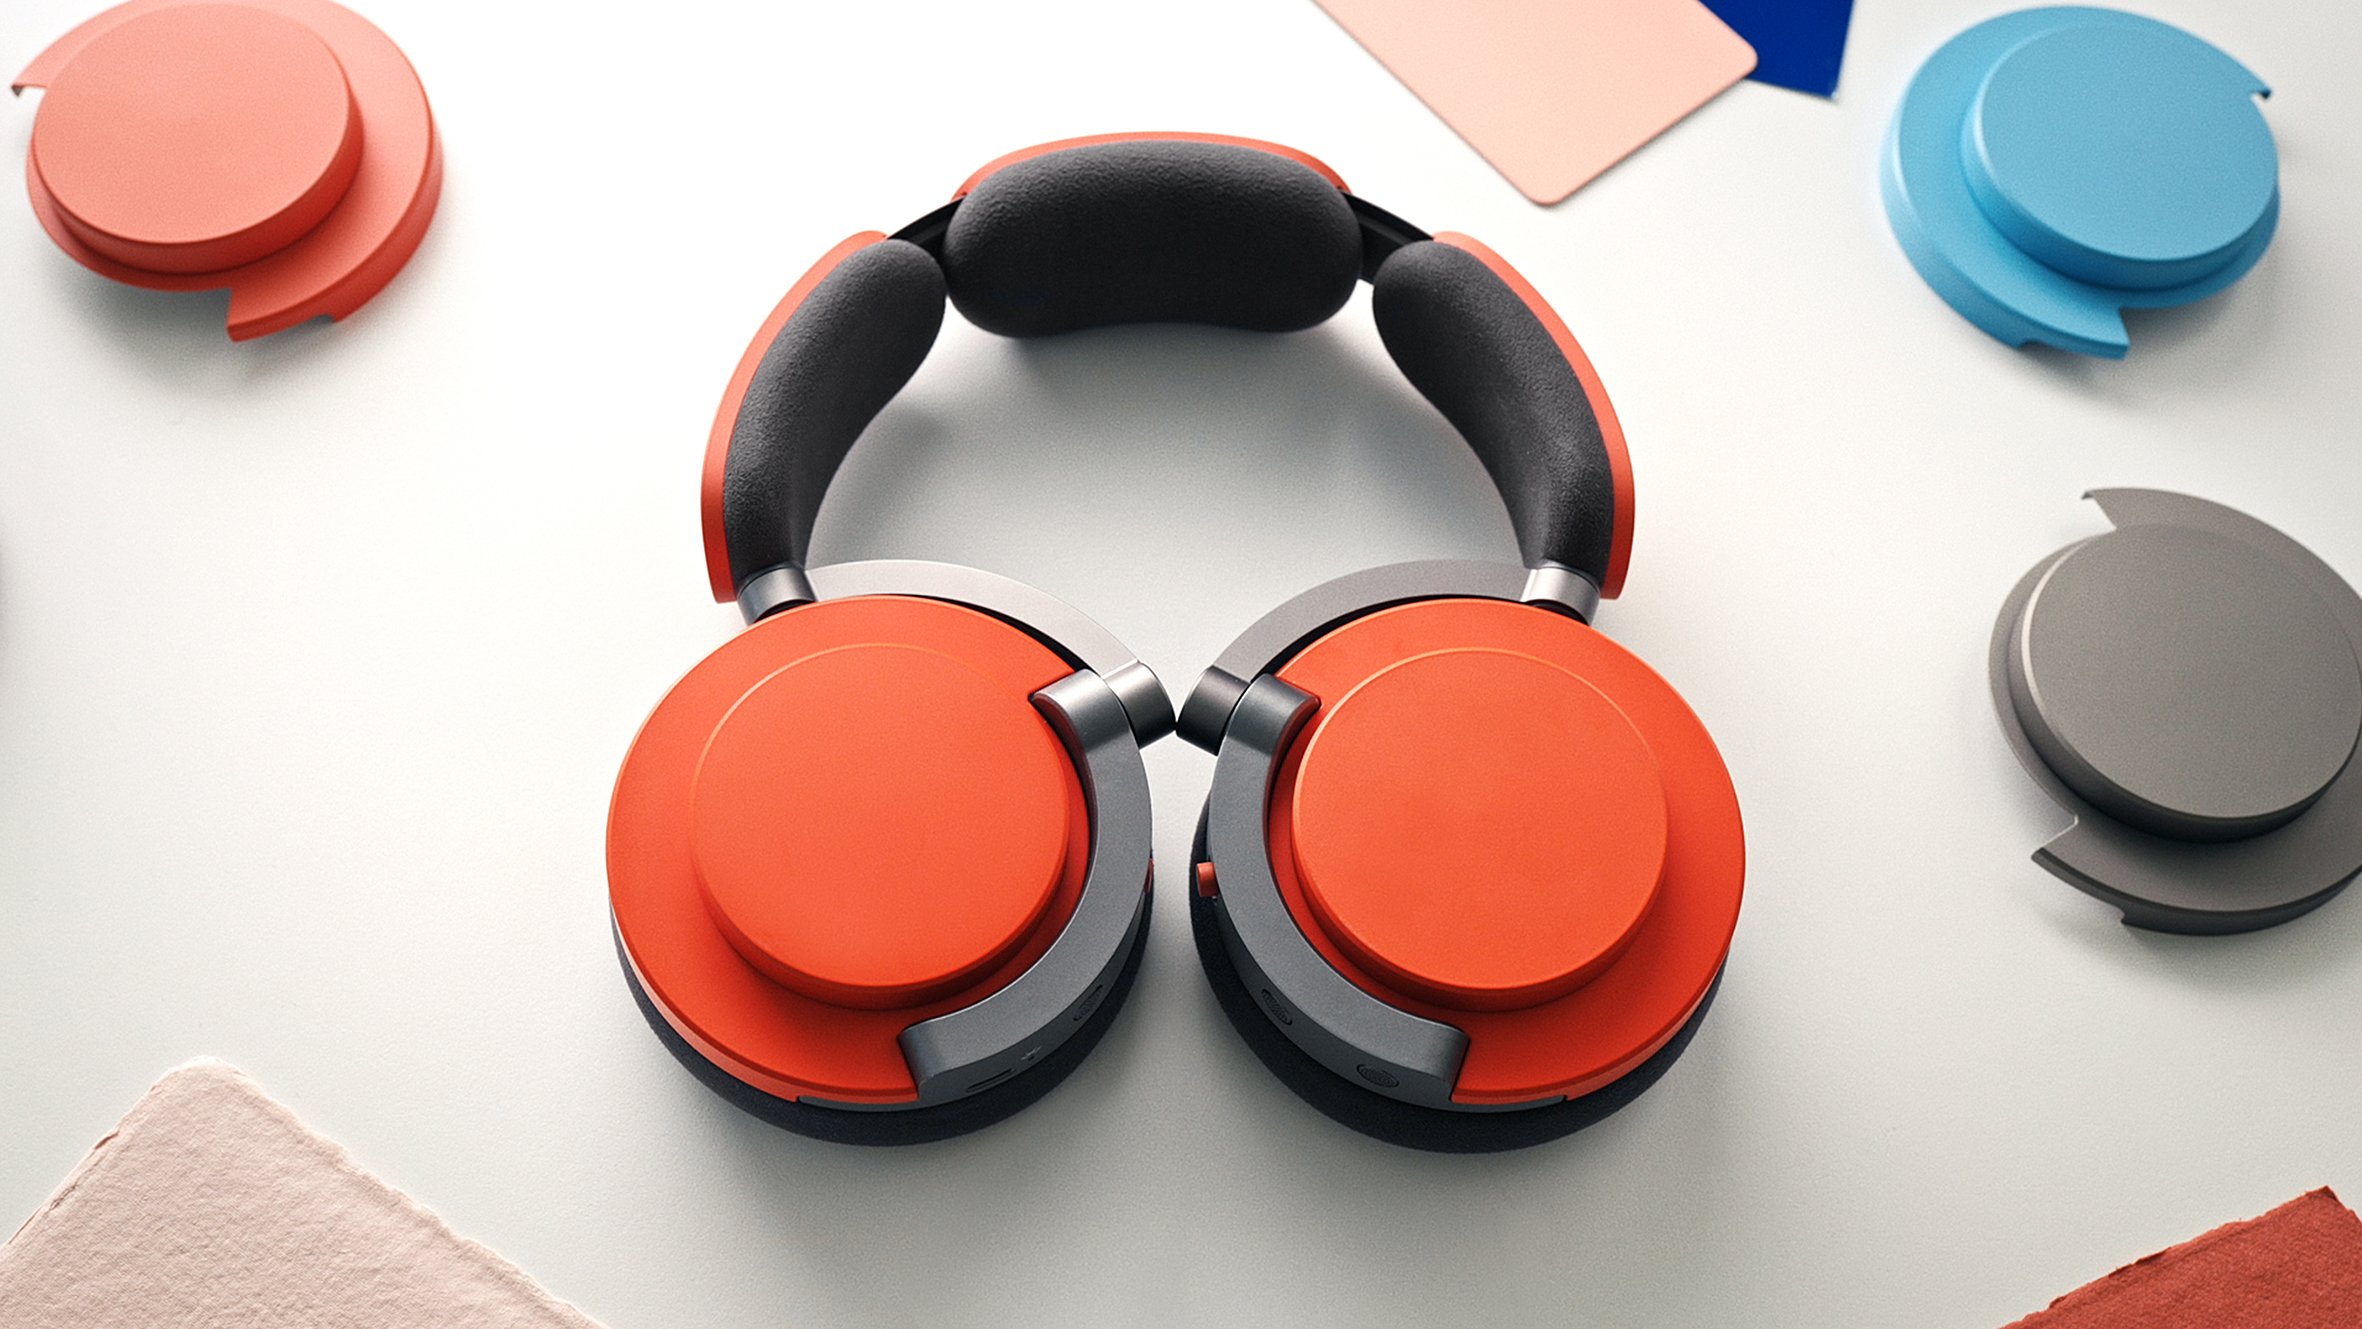 dyson-ontrac-headphones-release-malaysia-8.jpg